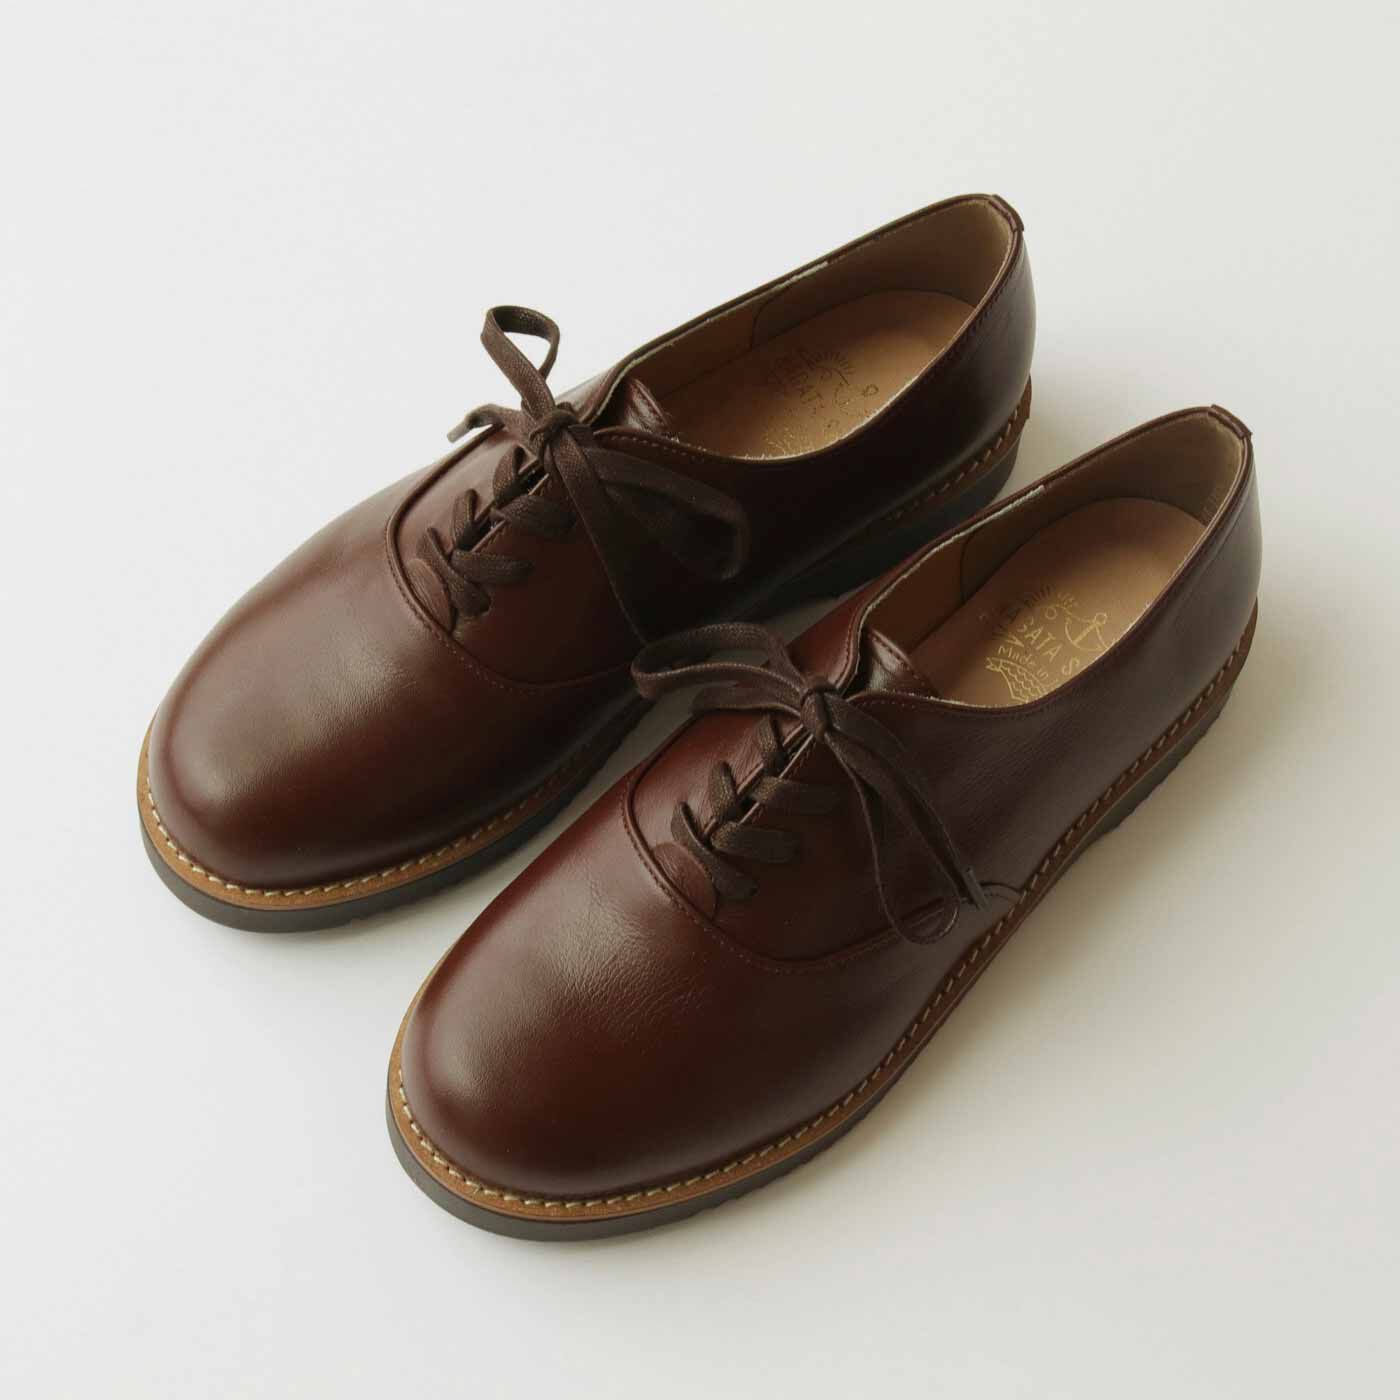 ＆Stories|長田の靴職人と靴デザイナーが作った 職人本革のポストマンシューズ〈マホガニーブラウン〉[本革　靴：日本製]|合わせるものを選ばないプレーンなデザイン。